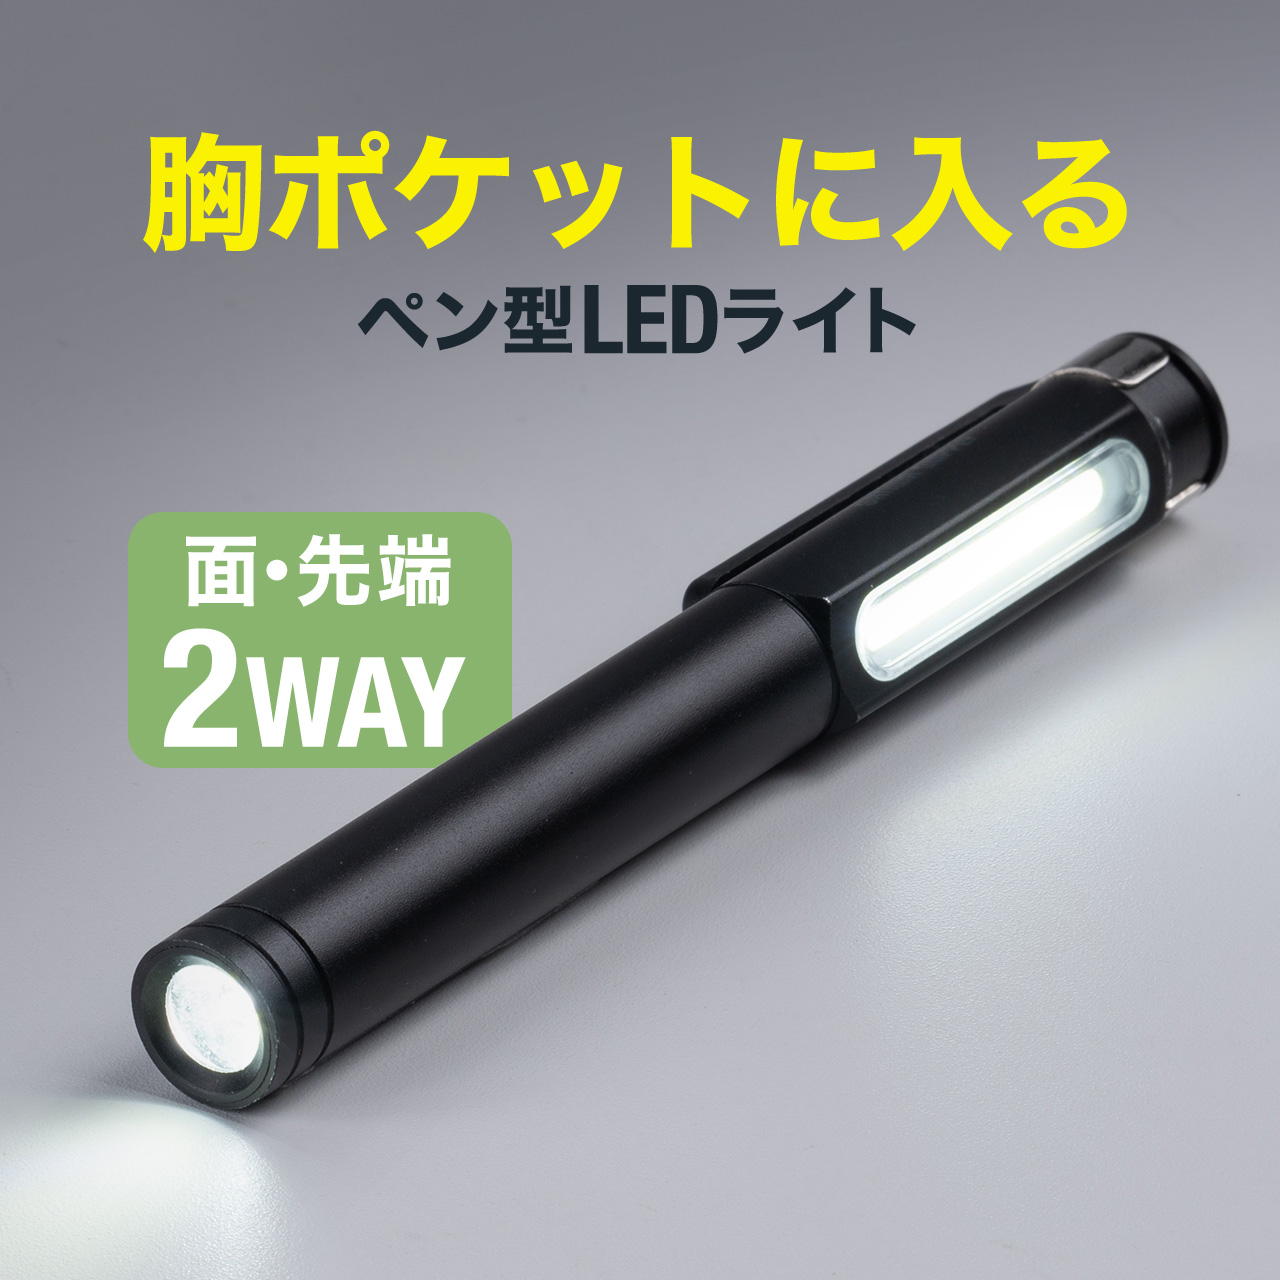 ペン型LEDライト ポケットライト クリップ USB充電式 LED懐中電灯 マグネット 防水規格IP54 最大300ルーメン スティック ハンディー COB コンパクト 800-LED068